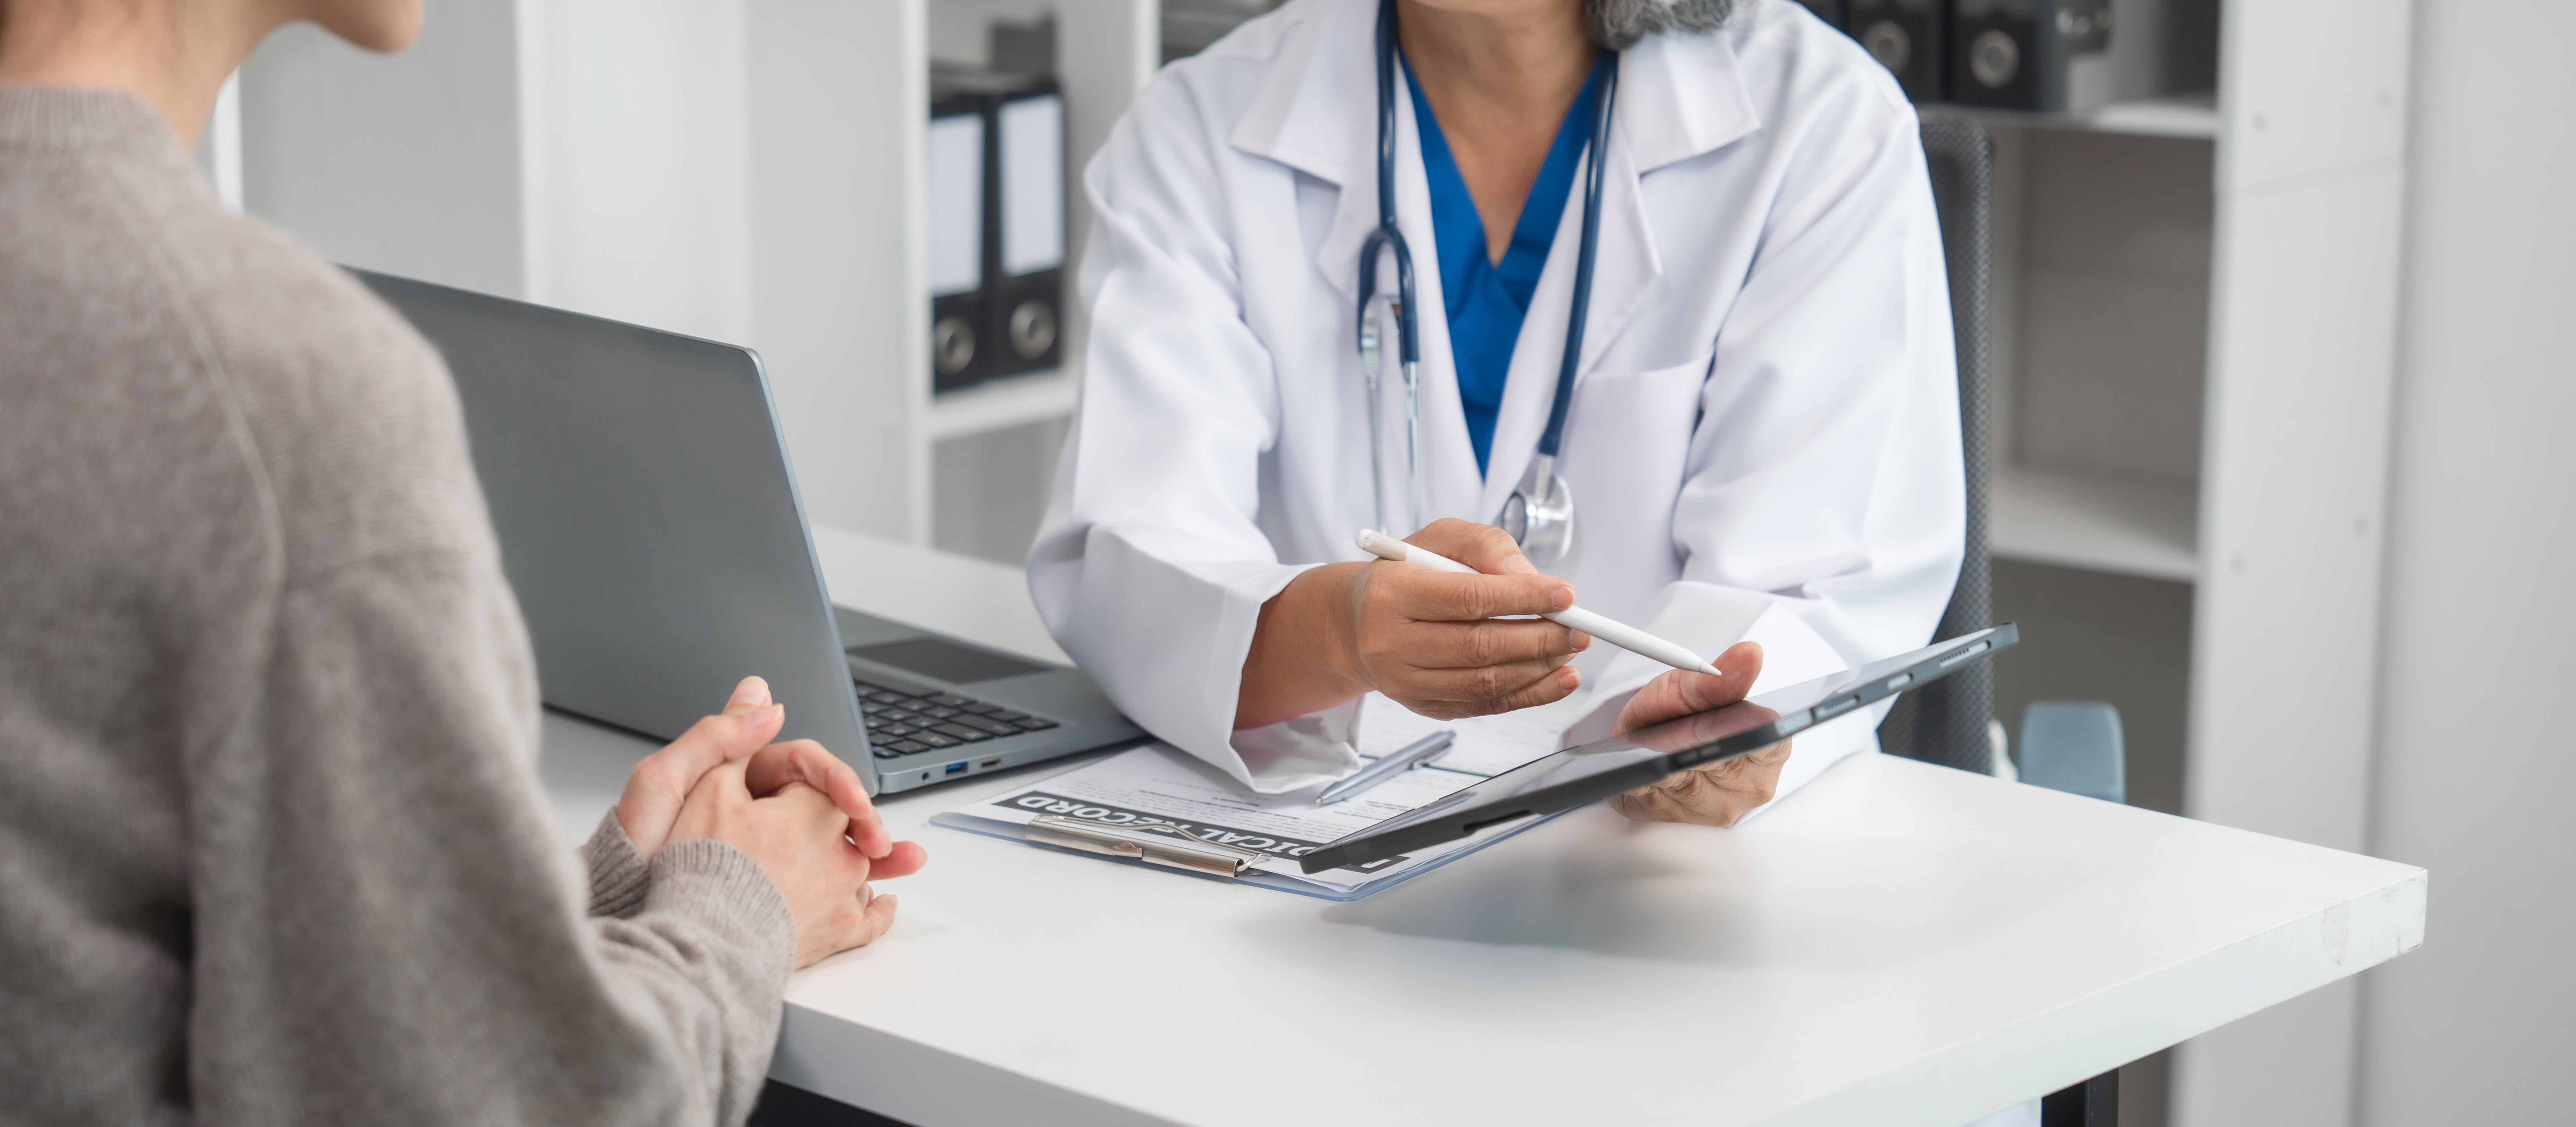 Ärztin spricht mit einer Patientin am Schreibtisch und hält dabei ein Tablet.